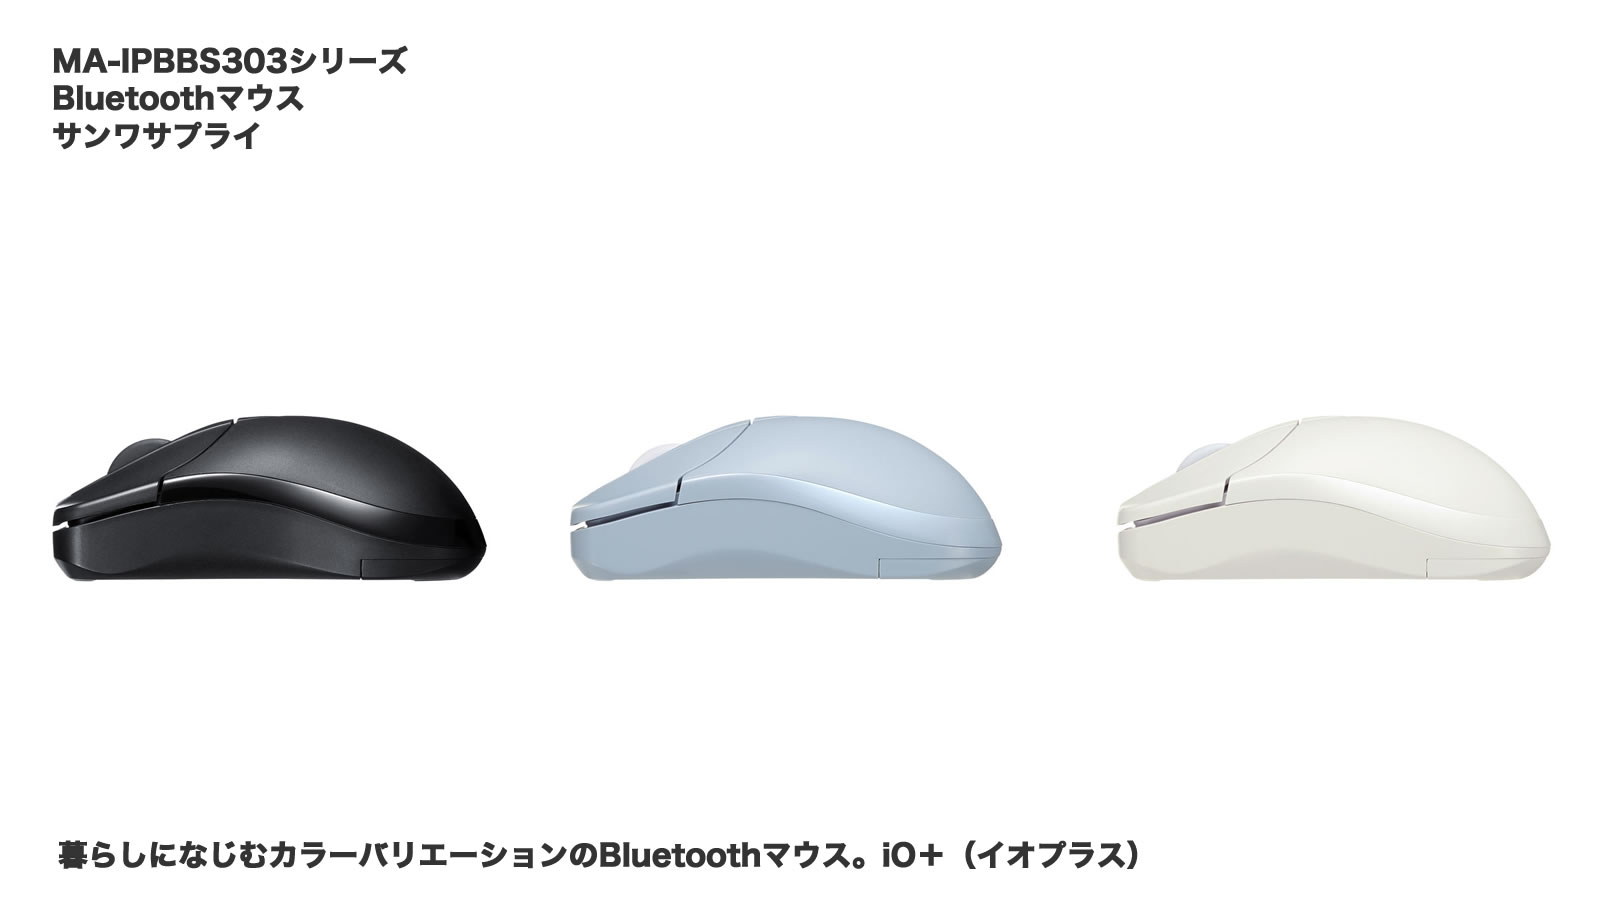 MA-IPBBS303 サンワサプライ Bluetoothマウス